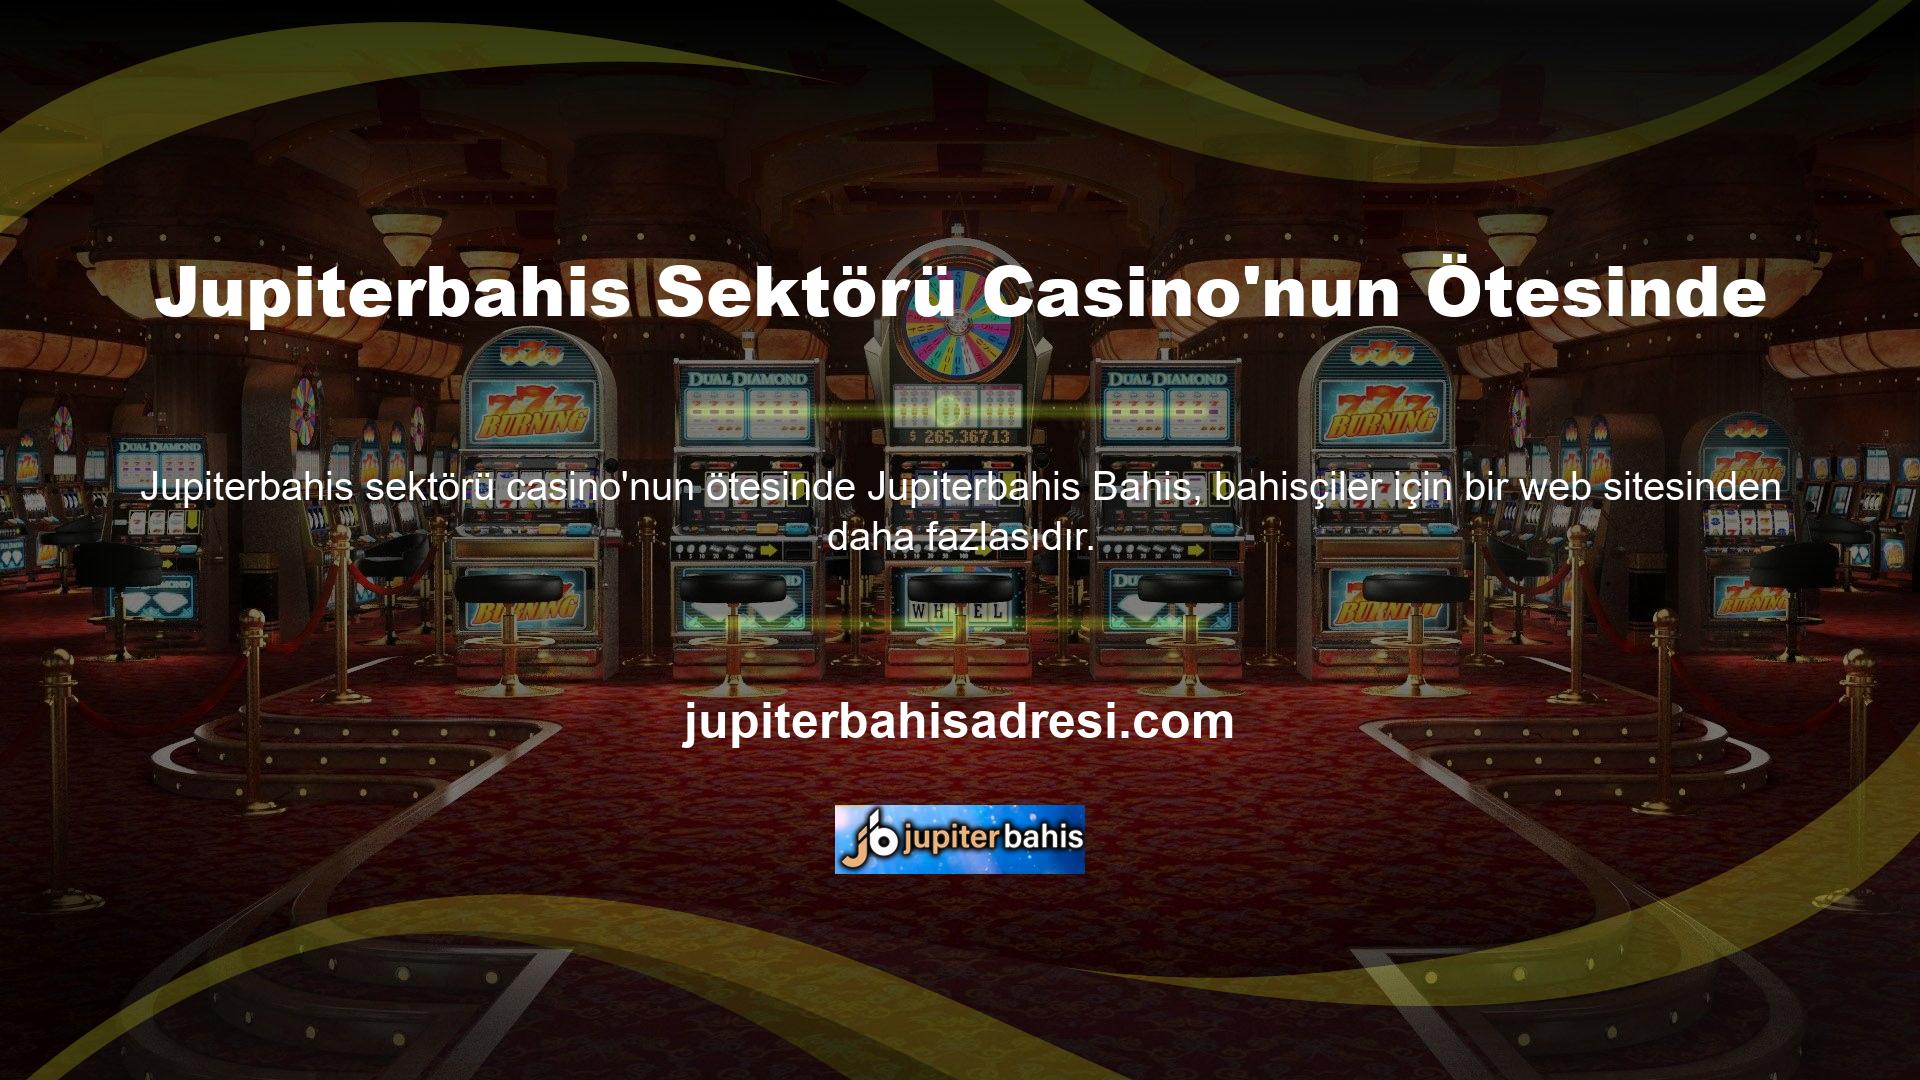 Casino oyuncuları, bingo oyuncuları ve slot makinesi oyuncuları da bu sitede vakit geçirebilirler